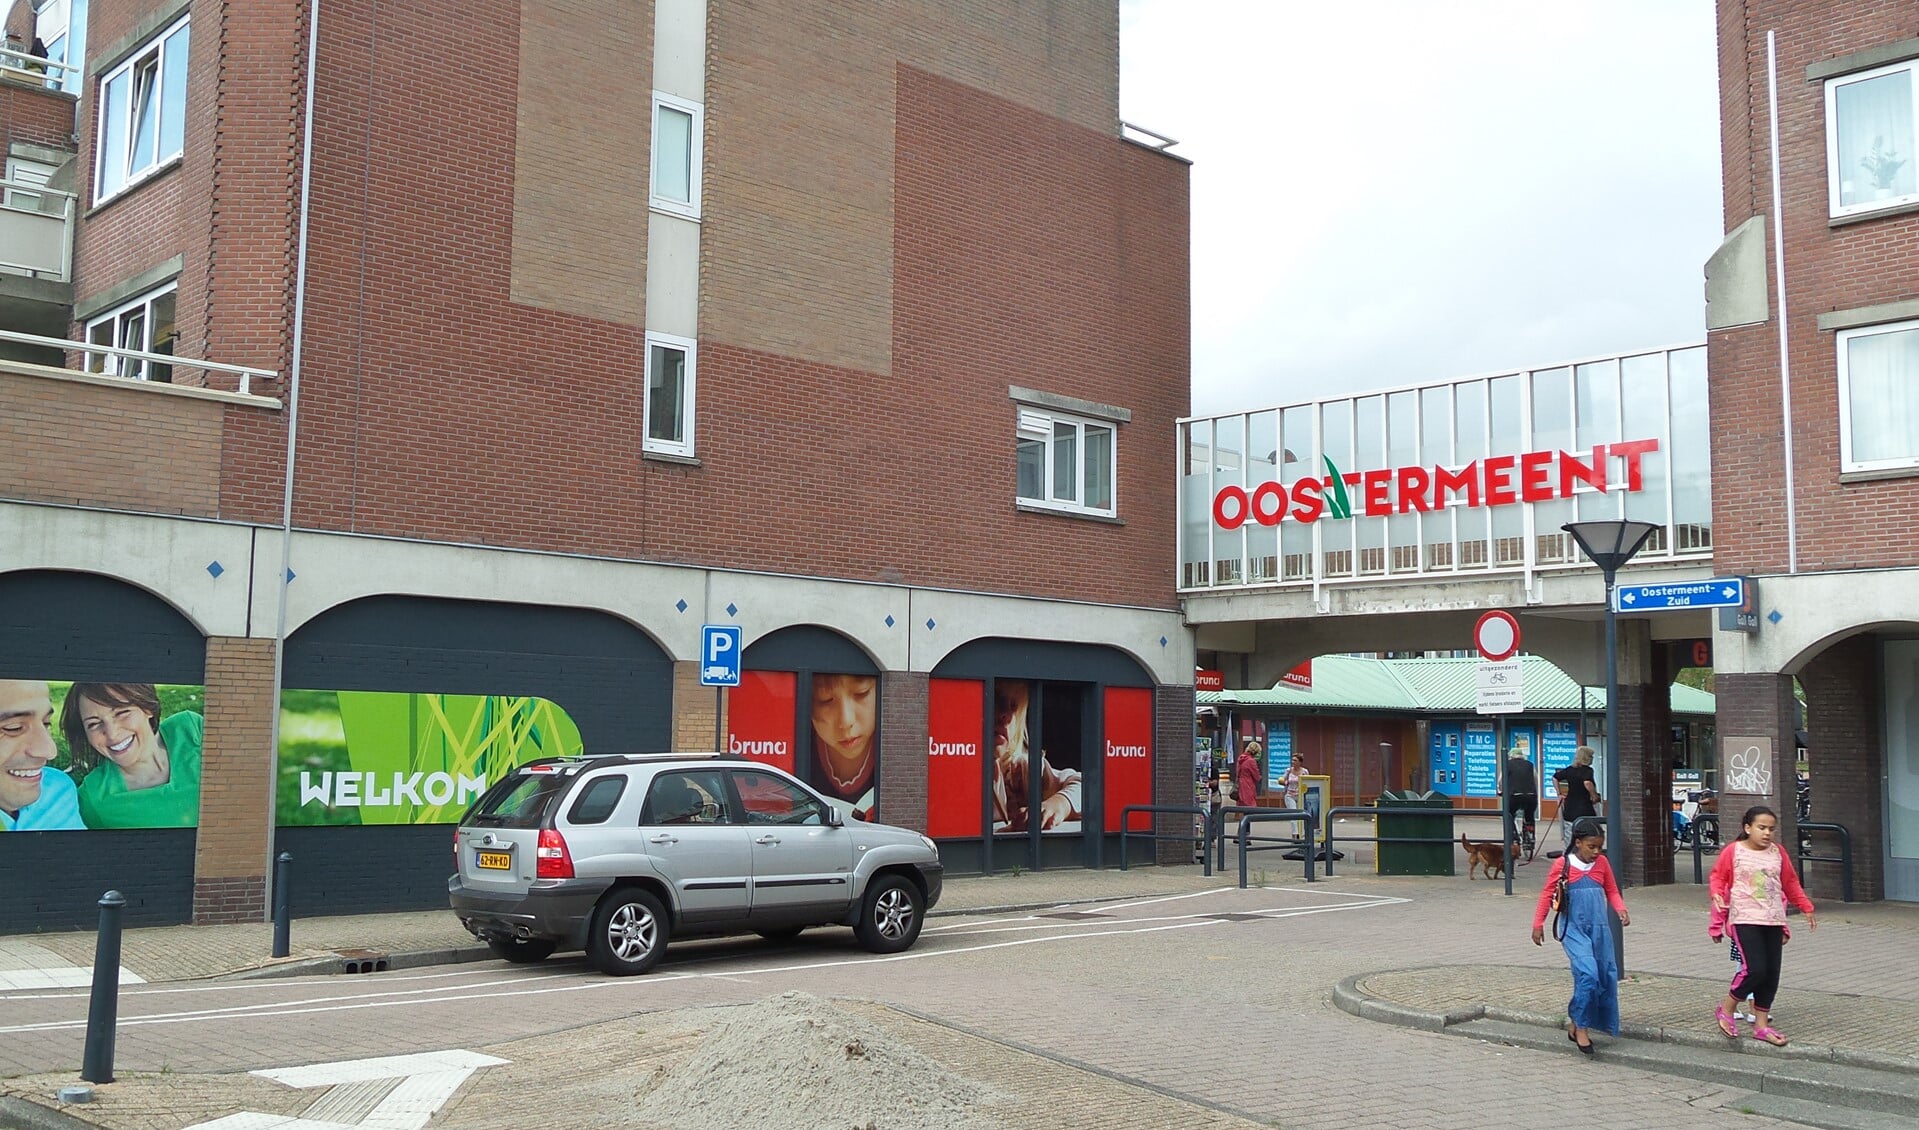 Vooral in Oostermeent willen veel winkeliers op zondag open kunnen.